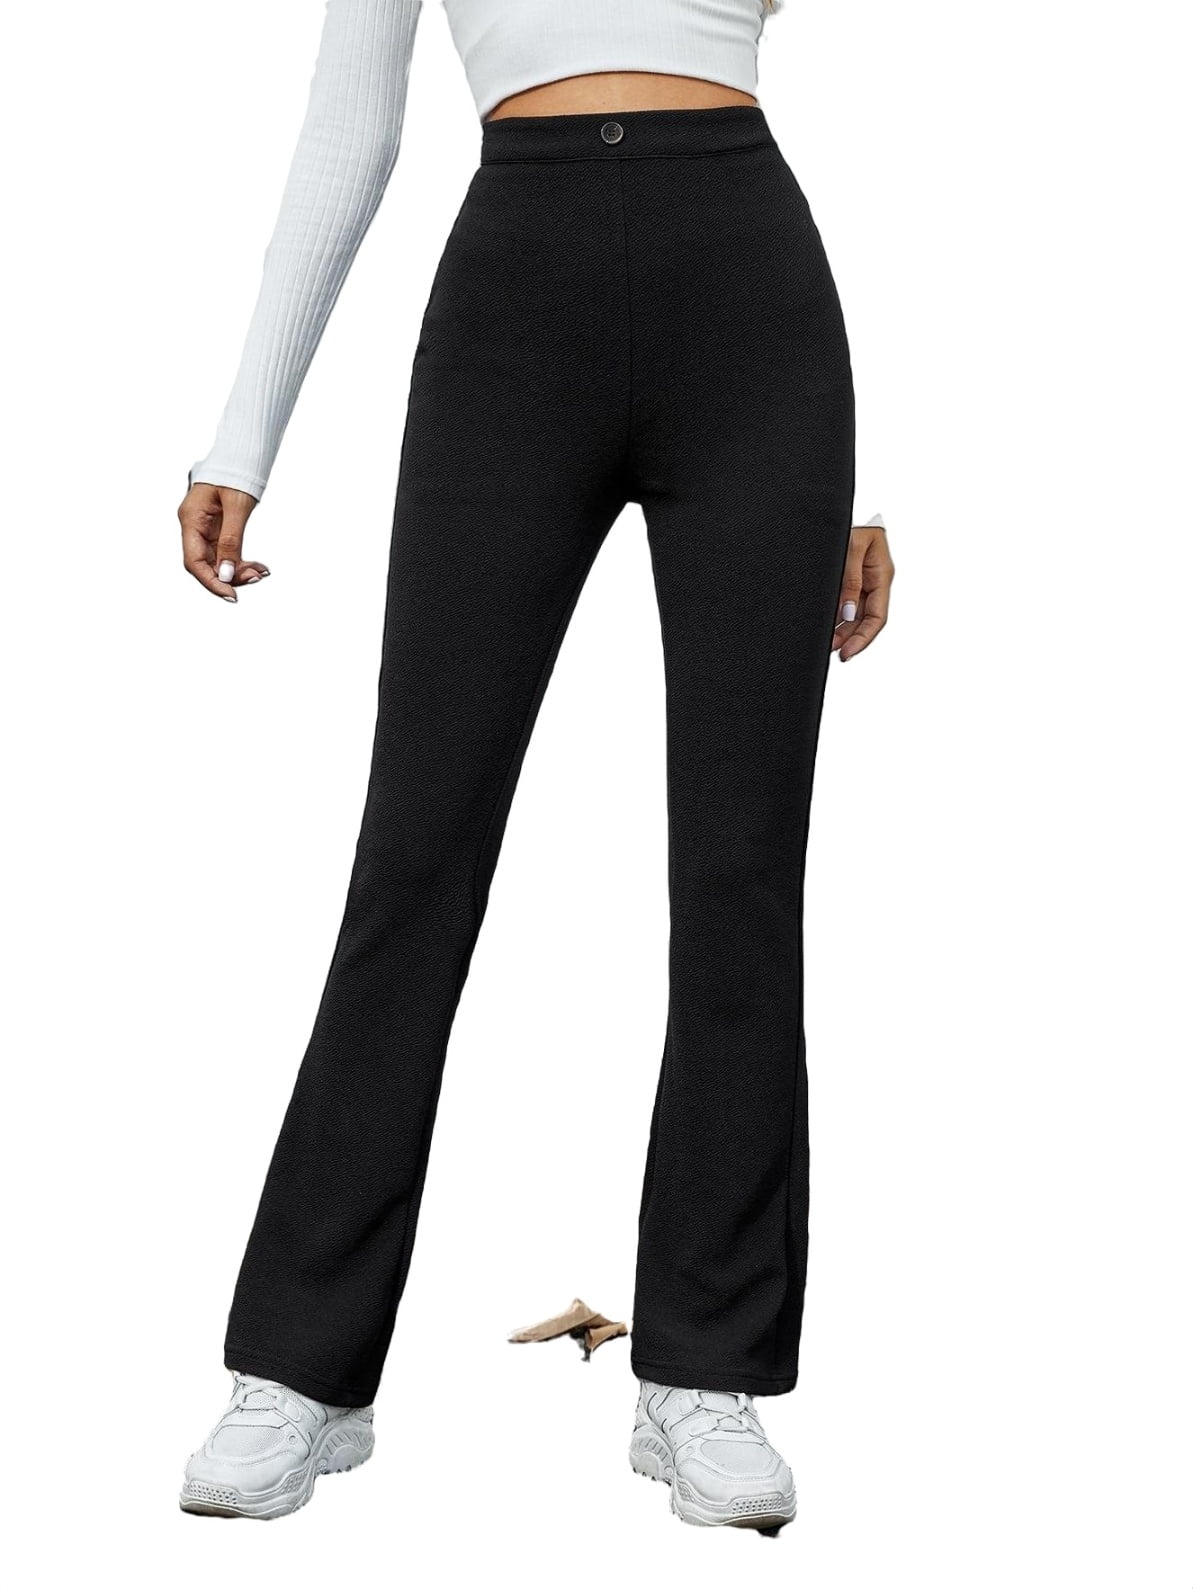 Size 0 Arden B. Full Length Flare Black Slacks Professional Work Pants Women  0